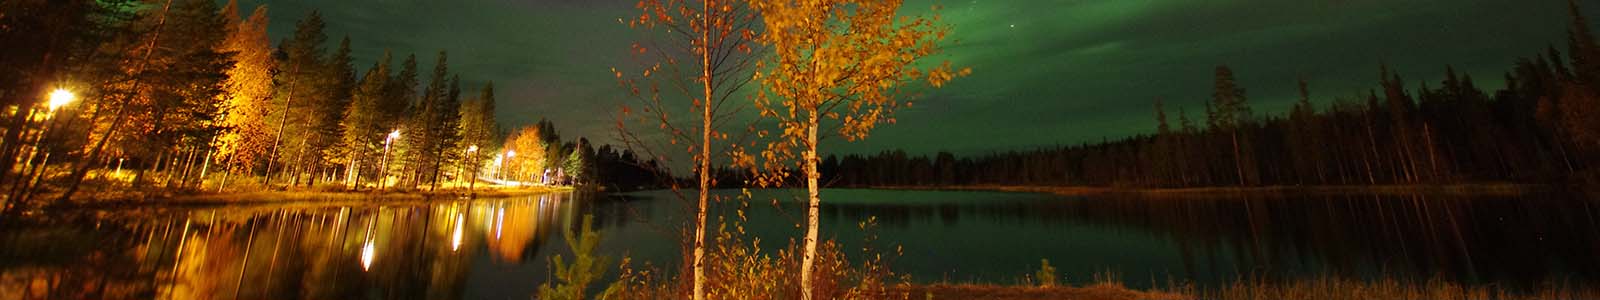 Op vakantie in september naar Lapland: rust, herfstkleuren en noorderlicht